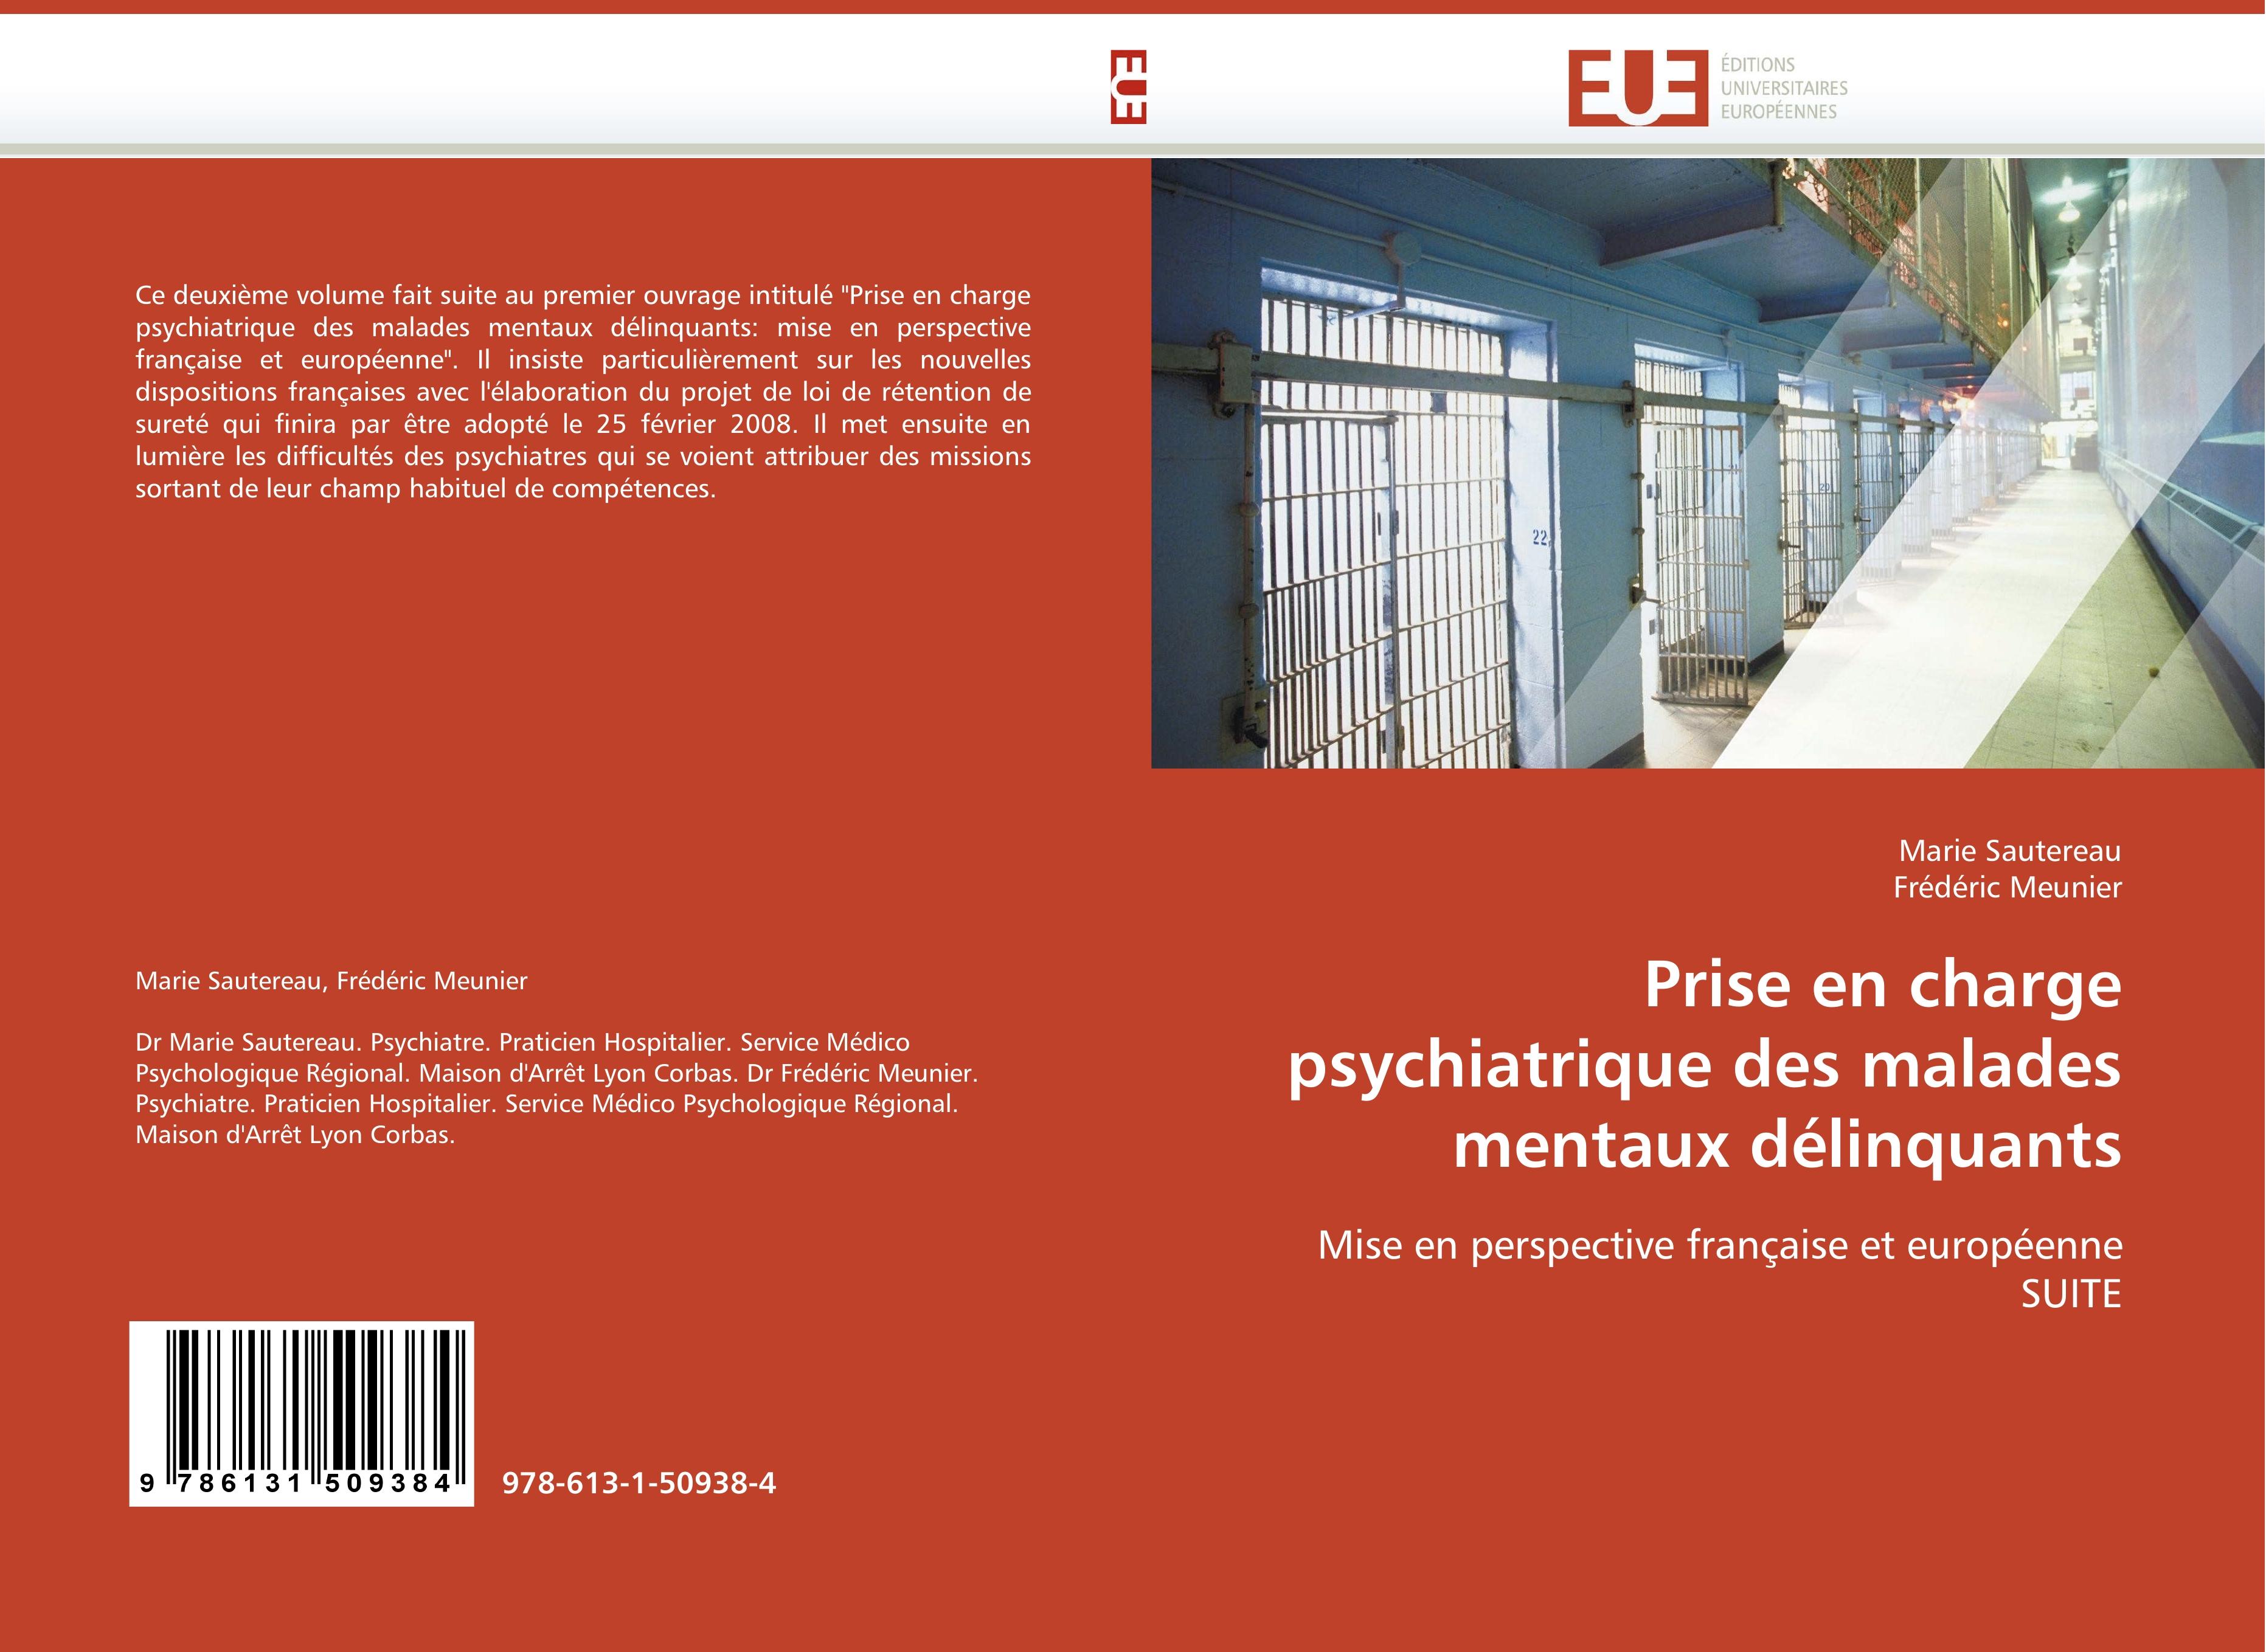 Prise en charge psychiatrique des malades mentaux délinquants / Mise en perspective française et européenne SUITE / Marie Sautereau (u. a.) / Taschenbuch / Paperback / 88 S. / Französisch / 2010 - Sautereau, Marie